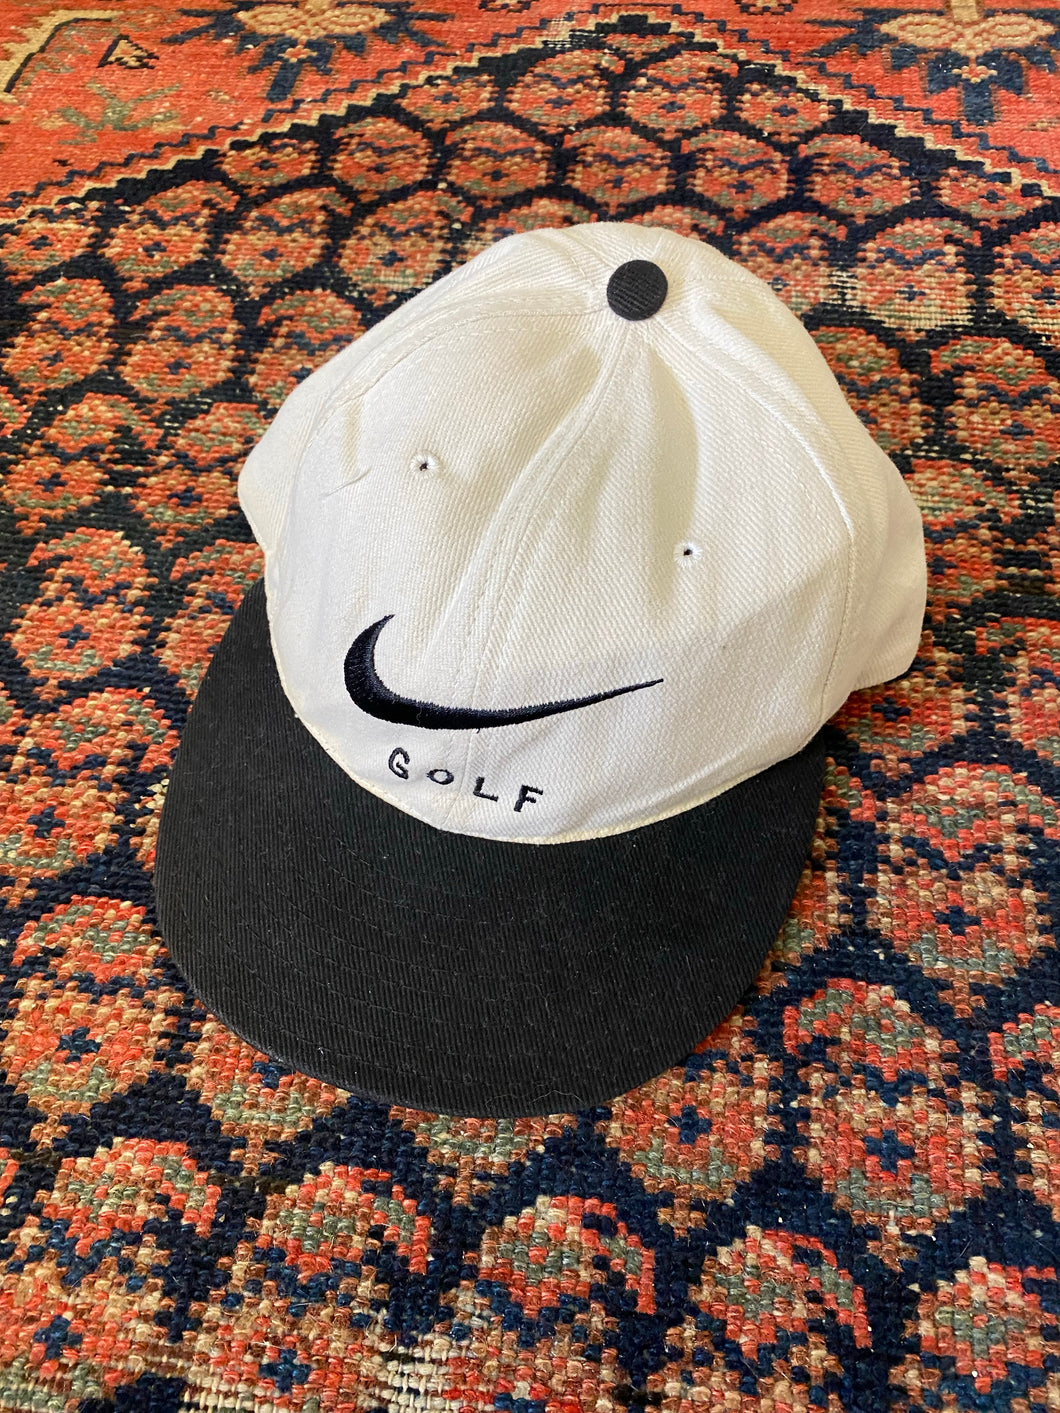 90s Nike Golf Strap-back Hat